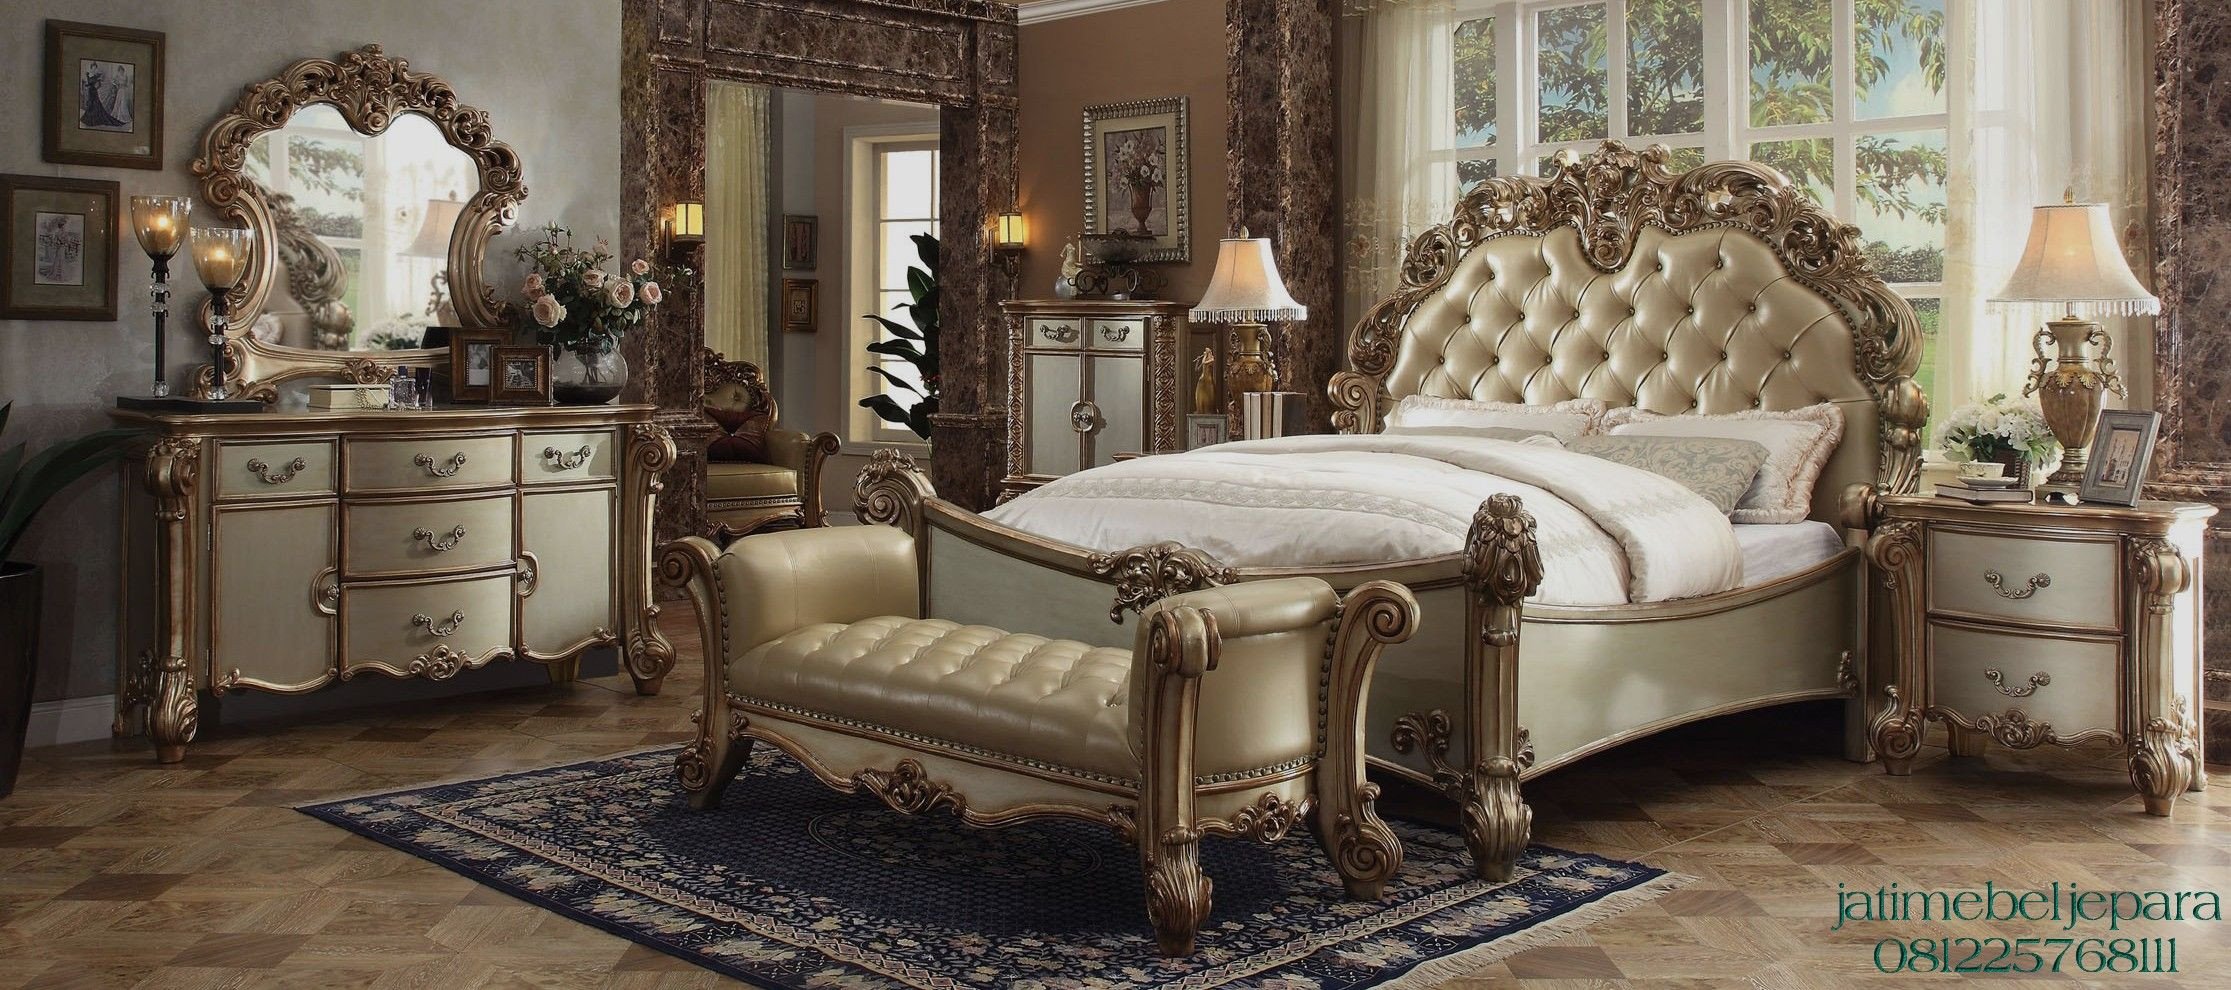 Farmers Furniture Bedroom Set Beautiful Tempat Tidur Ukir Klasik Mewah Gold Merupakan Produk Dari